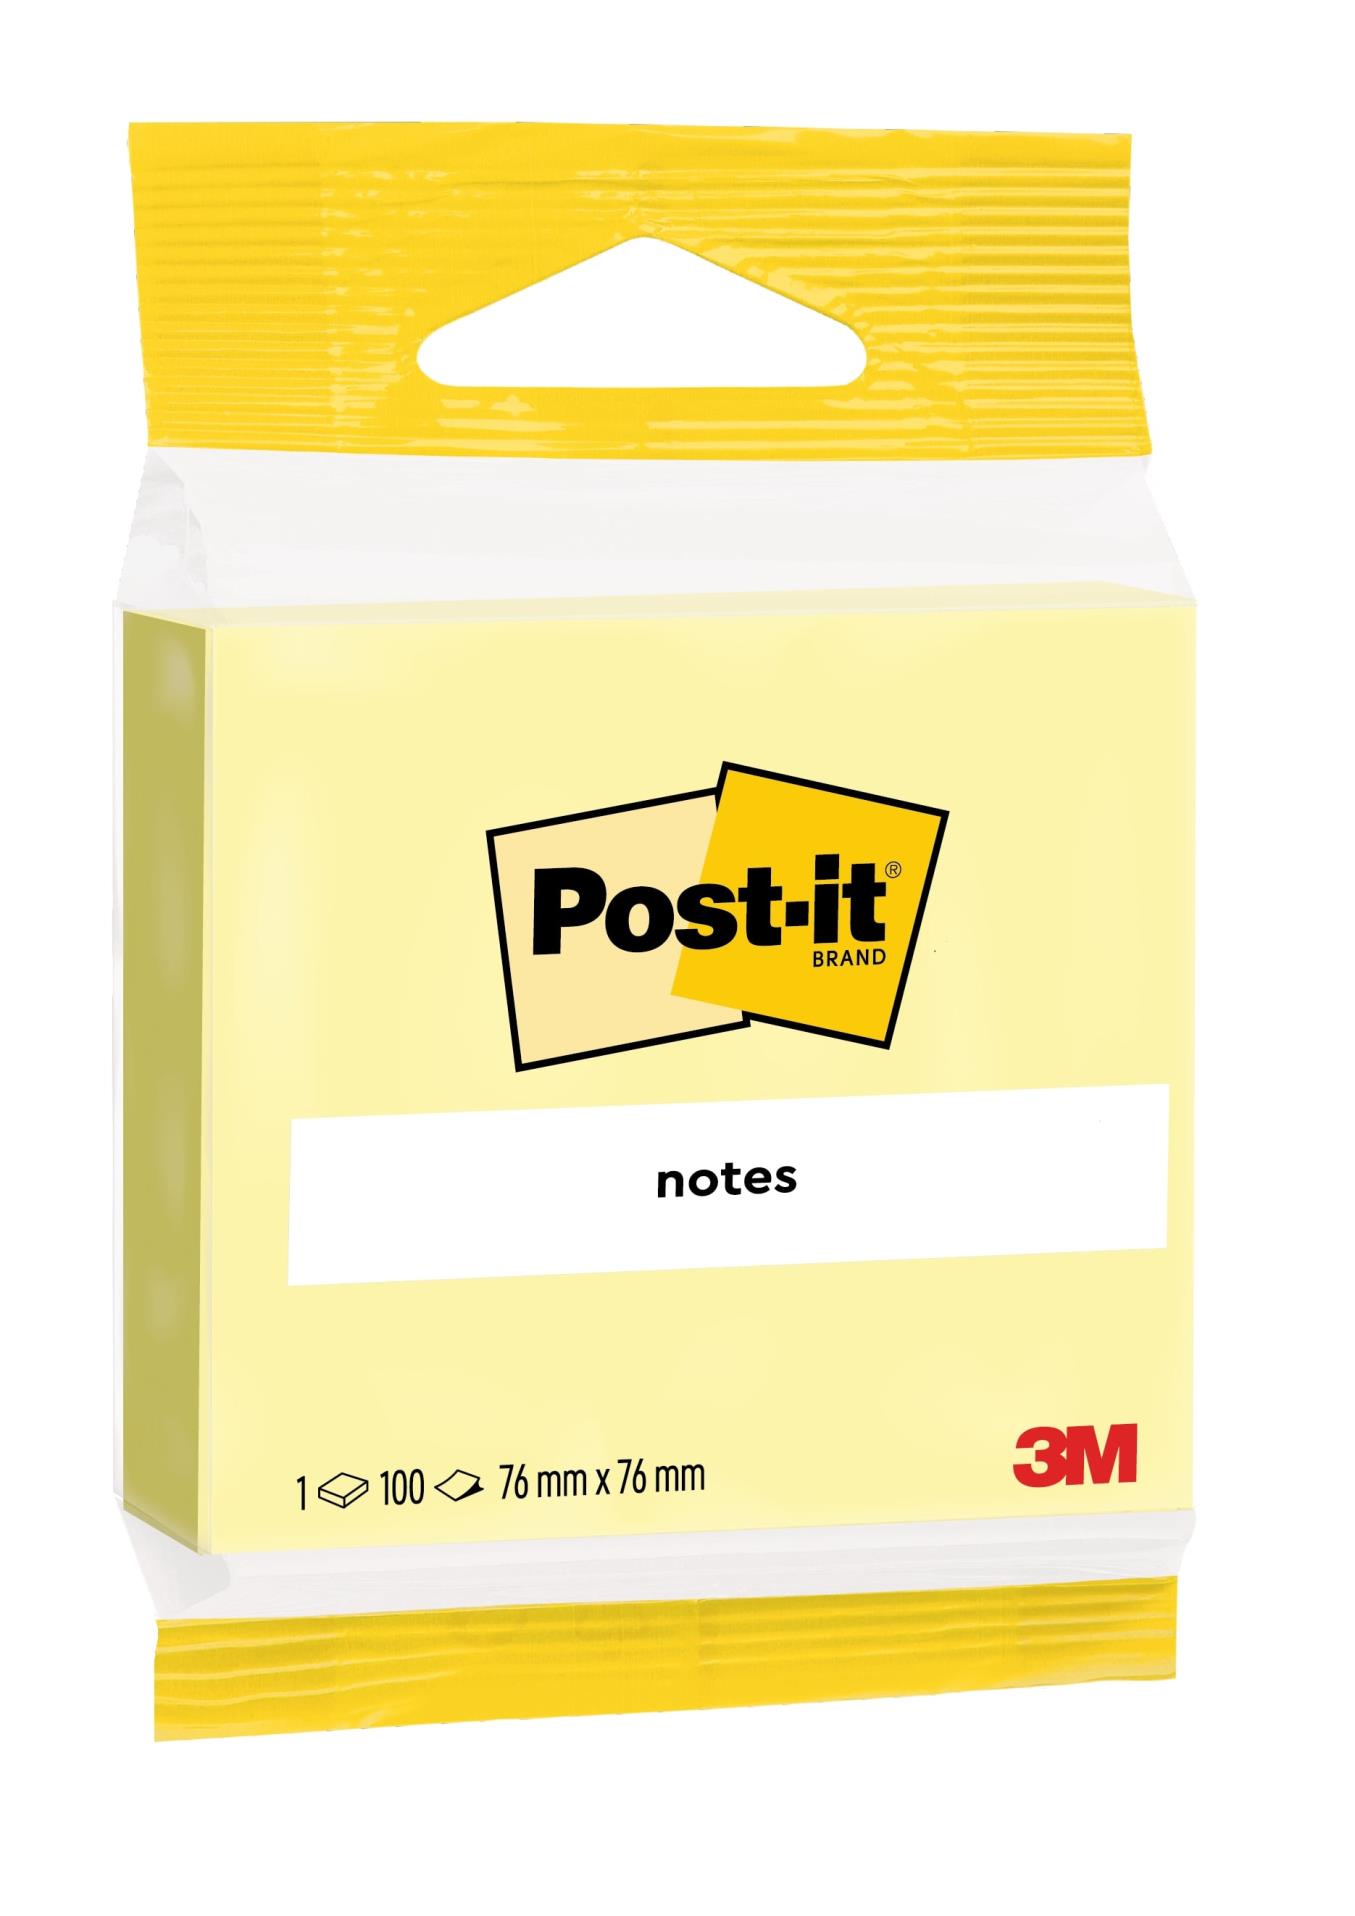 Samolepicí bloček Post-it - 76 x 76 mm, kanárkově žlutý